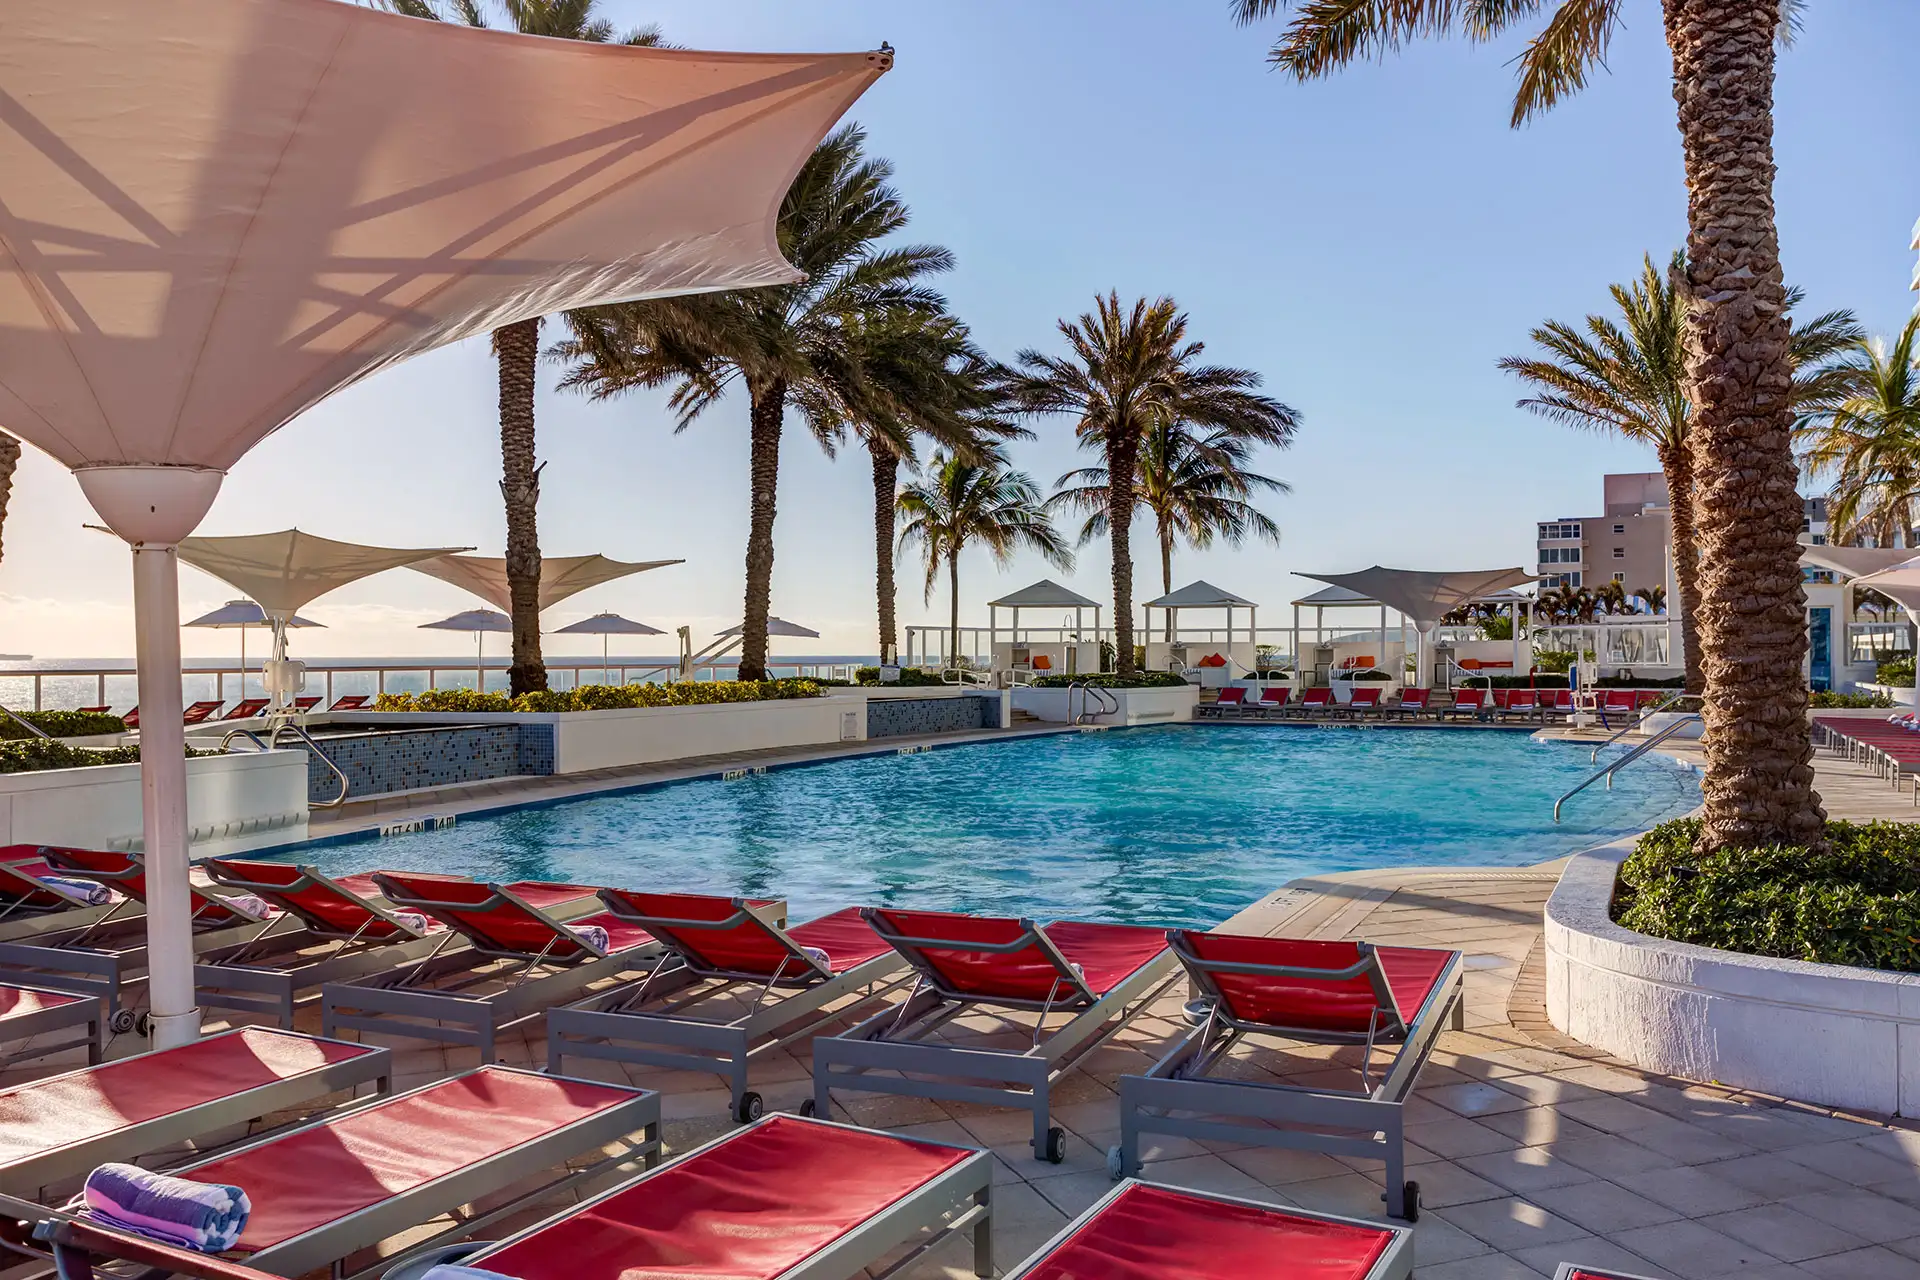 Pool at Hilton Fort Lauderdale Beach Resort; Courtesy of Hilton Fort Lauderdale Beach Resort